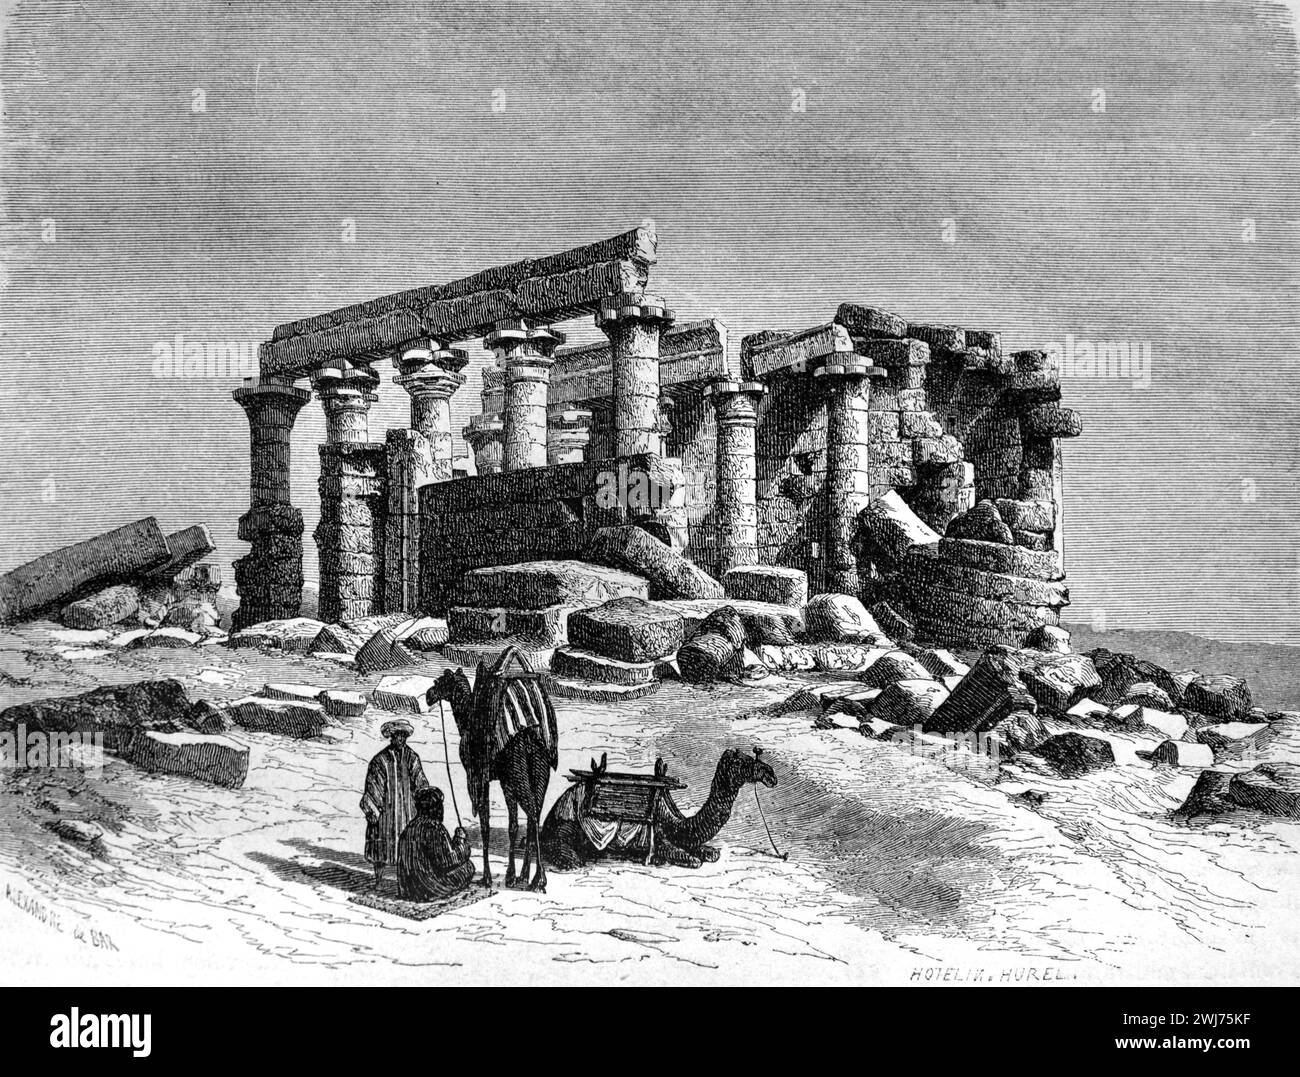 Le rovine del Tempio di Maharraqa o Tempio al-Maharraqa sul suo sito originale nella bassa Nubia prima di essere trasferito al nuovo Wadi es-Sabua nel 196às, Nubia, Egitto. L'antico tempio egizio è dedicato a Iside e Serapide. Incisione vintage o storica o illustrazione 1863. Foto Stock